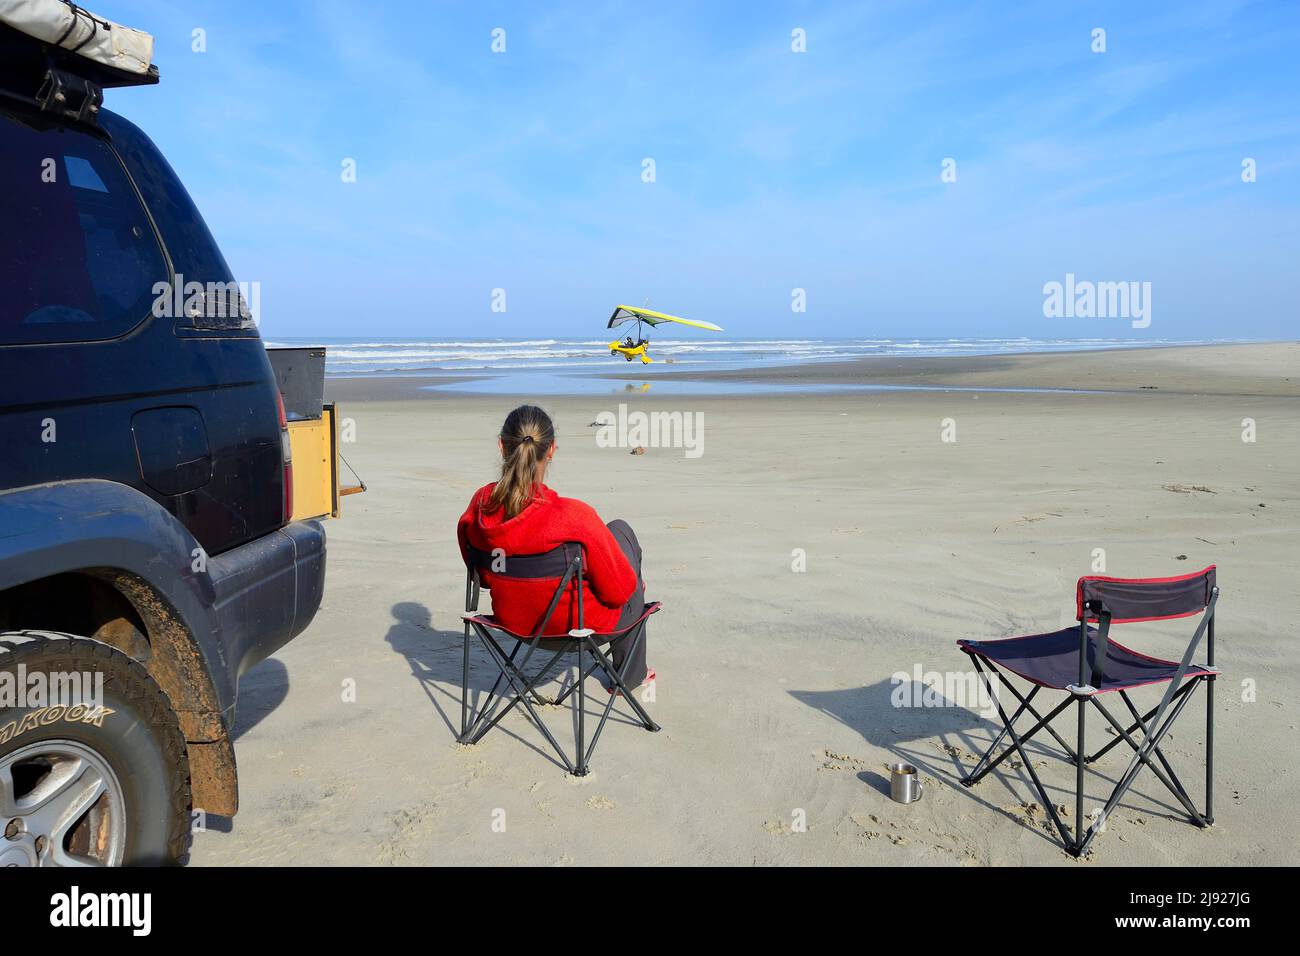 Frau, die auf einem Campingstuhl neben einem Geländewagen am Strand sitzt und ein leichtes Flugzeug beim Start beobachtet, Ulm, Torres, Rio Grande do Sul, Brasilien Stockfoto